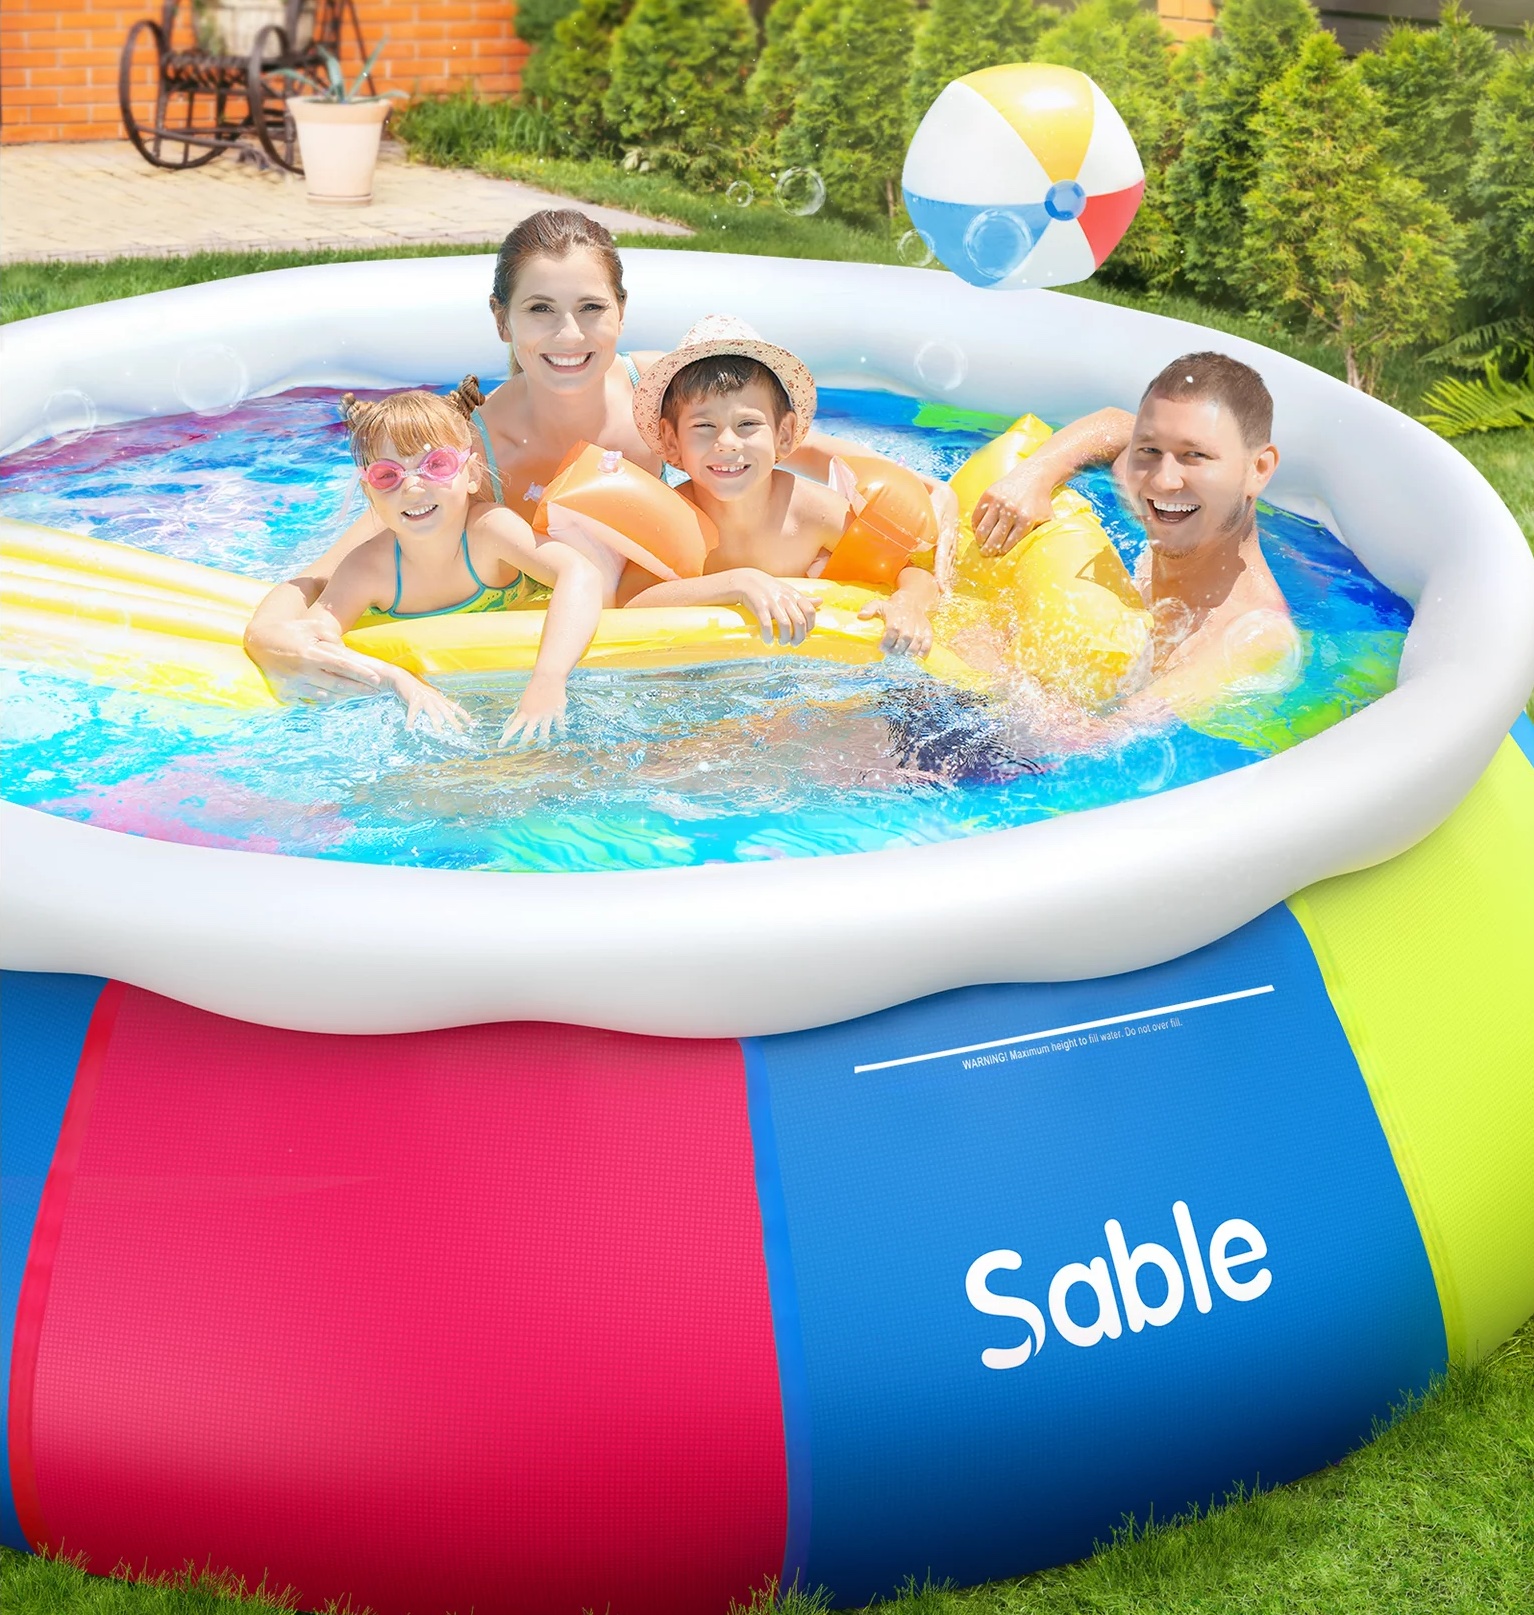 Sable Pool